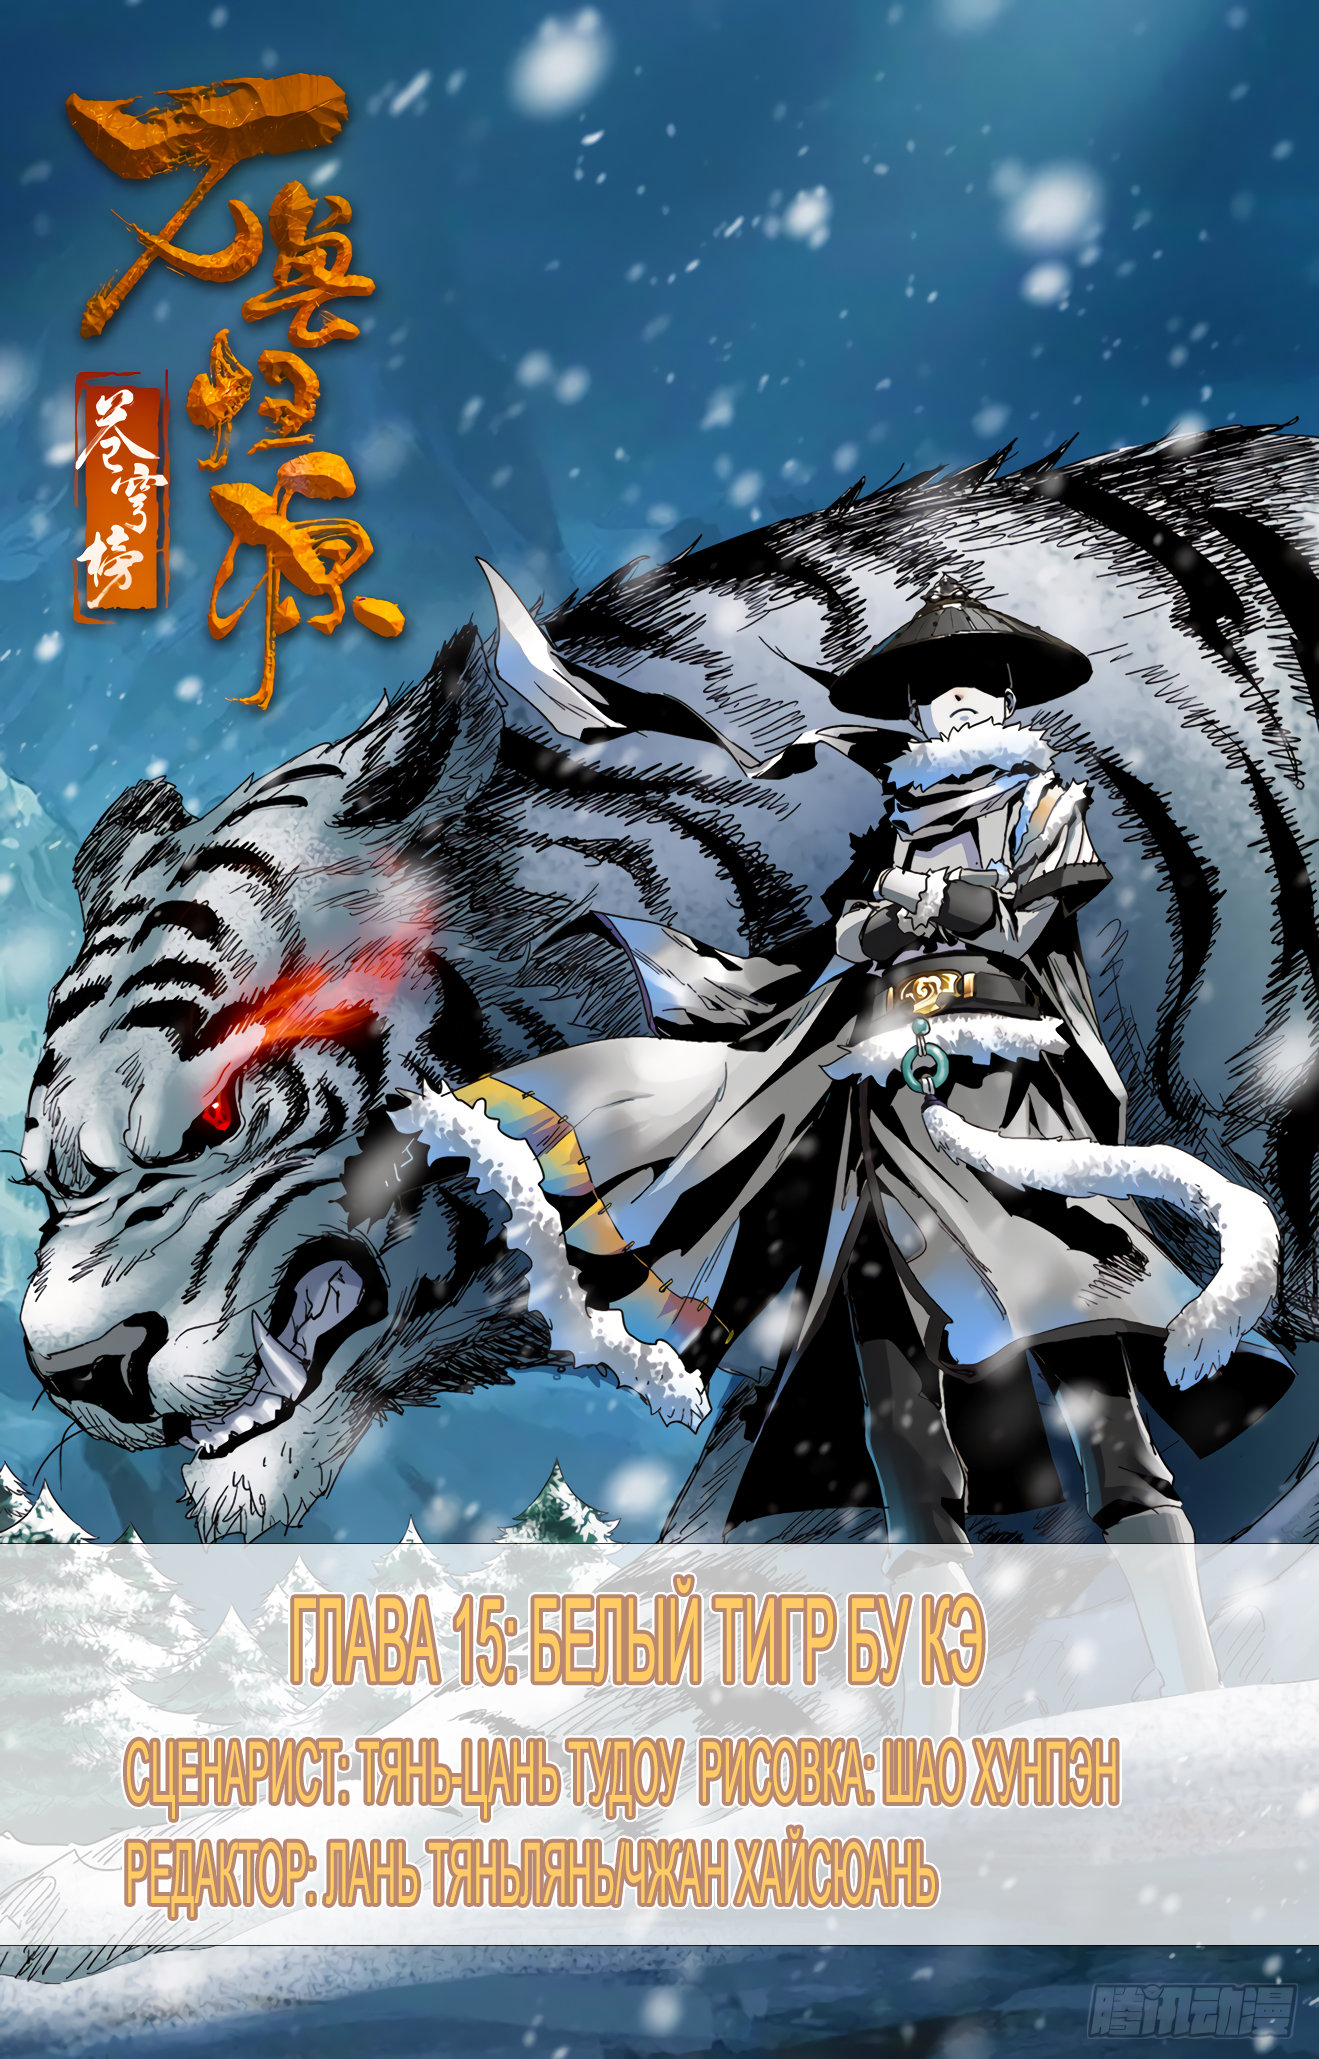 Расколотая битвой синева небес: Возвращение зверей 1 - 15 Белый тигр Бу Кё